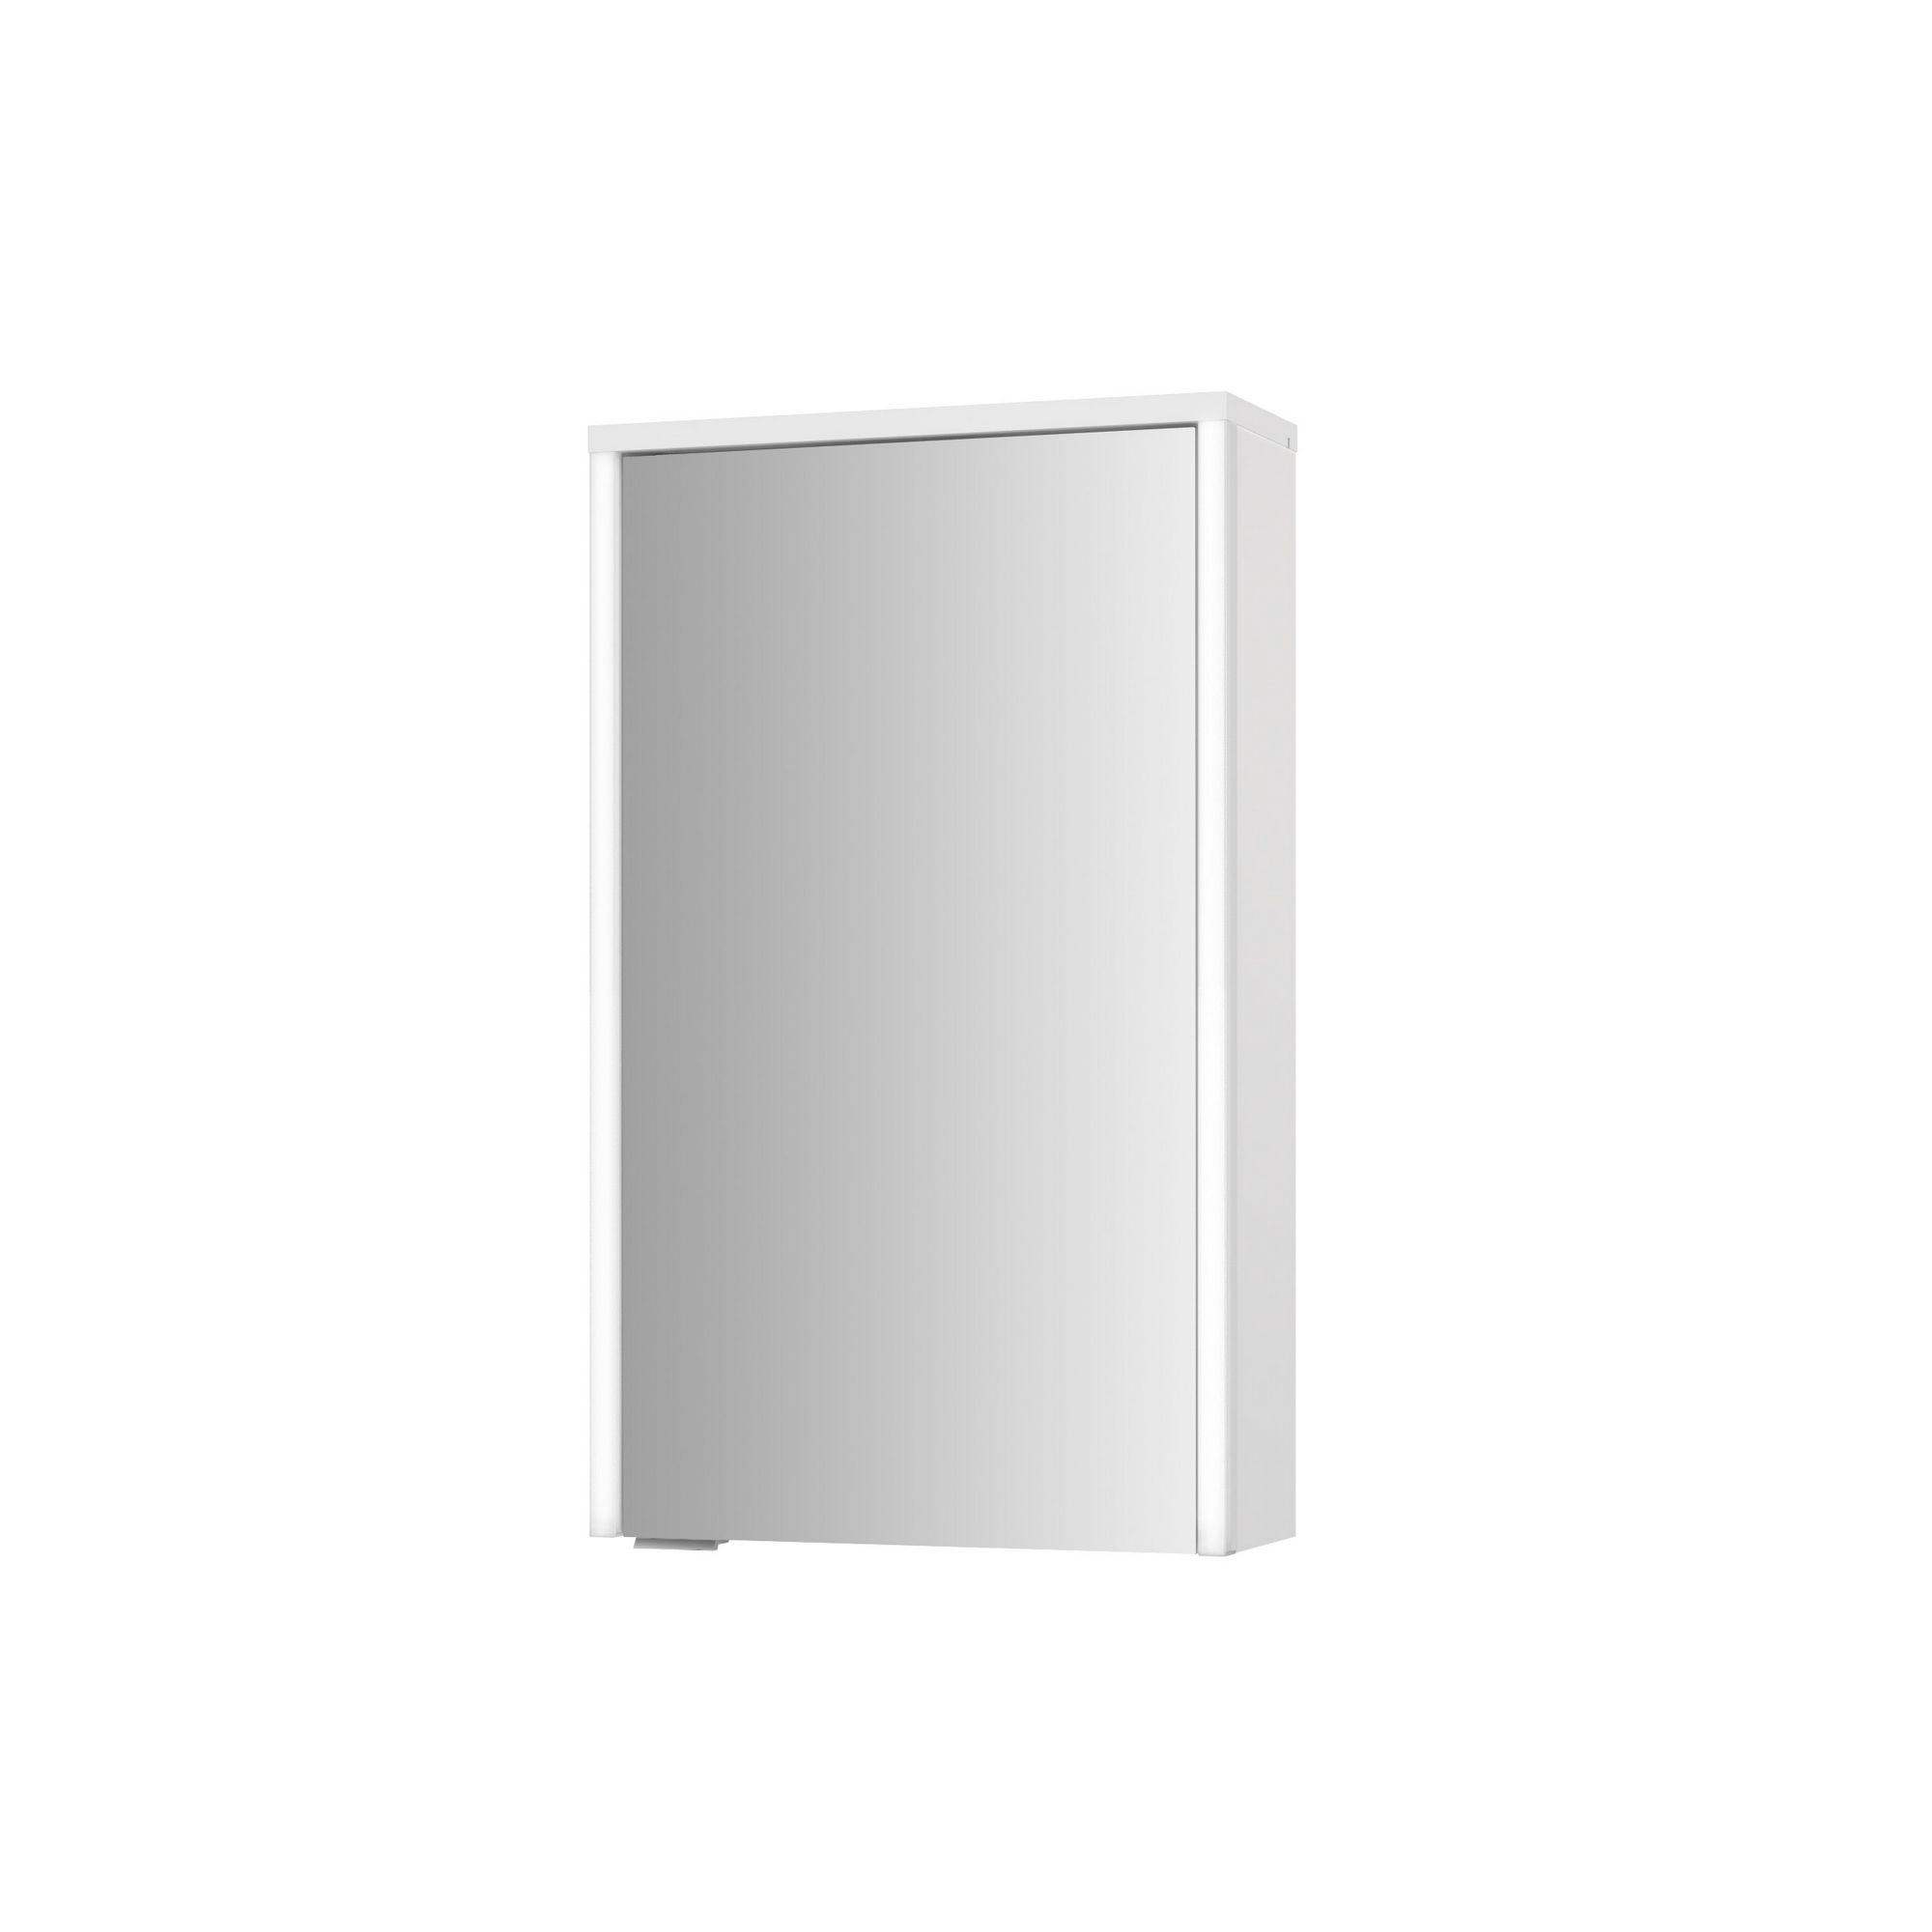 LED-Spiegelschrank 'Arda' weiß 72,5 x 68,2 x 19,5 cm + product picture